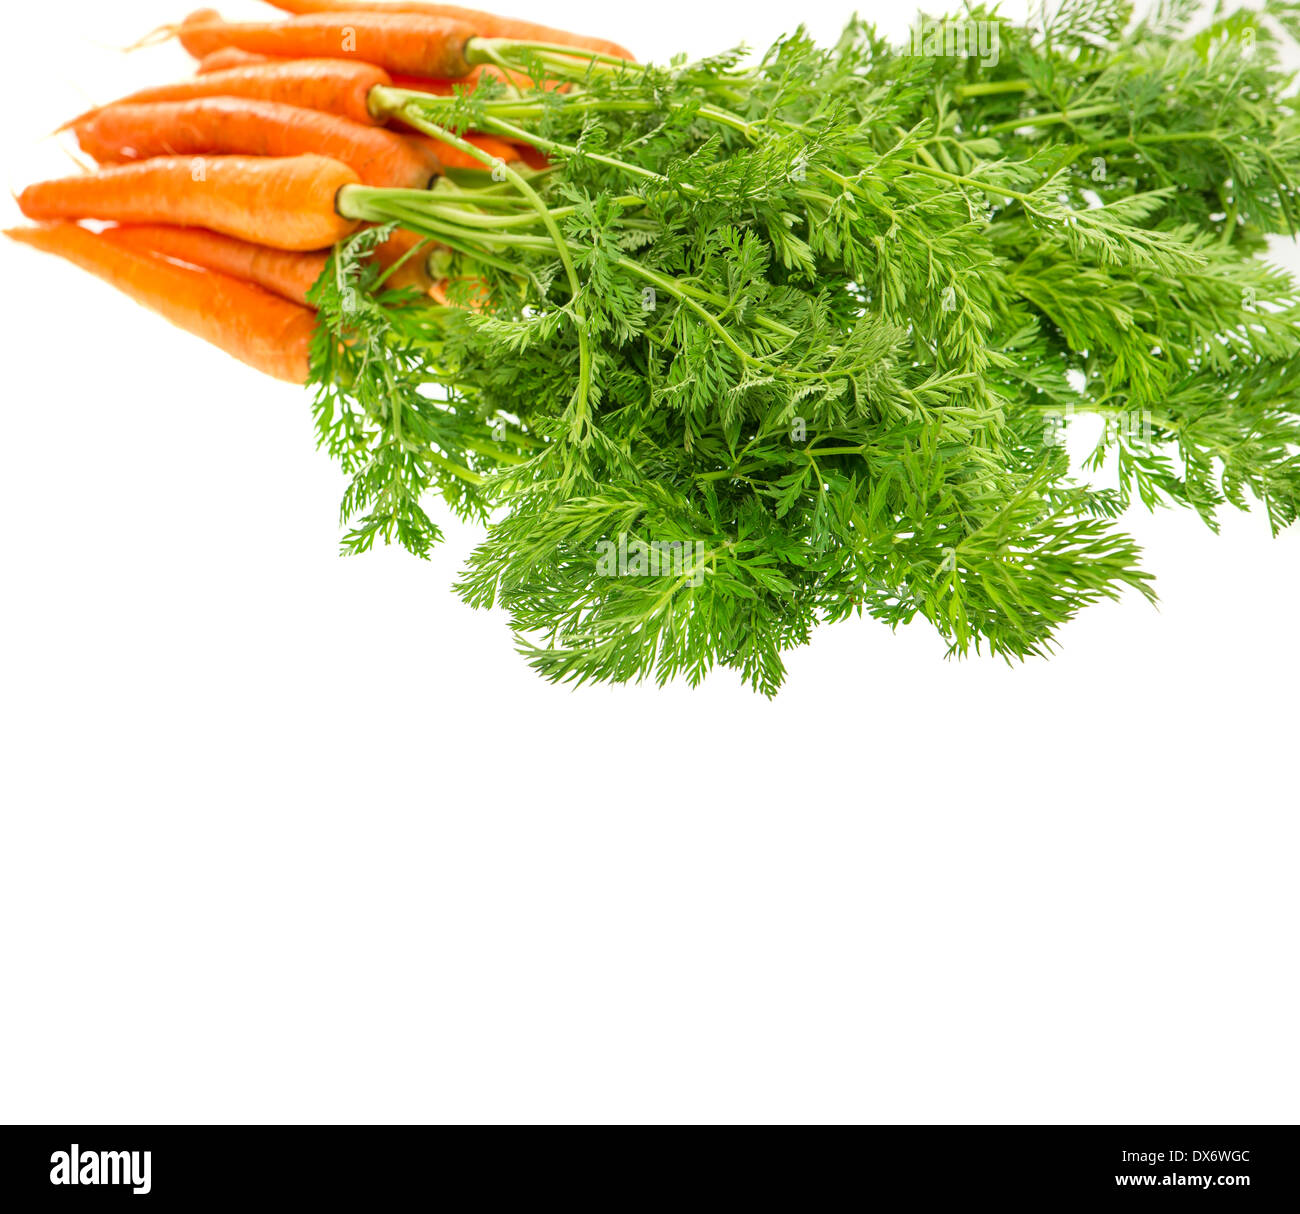 Botte de carottes fraîches avec des feuilles vertes isolé sur fond blanc. Légume. L'alimentation. Focus Selctive Banque D'Images